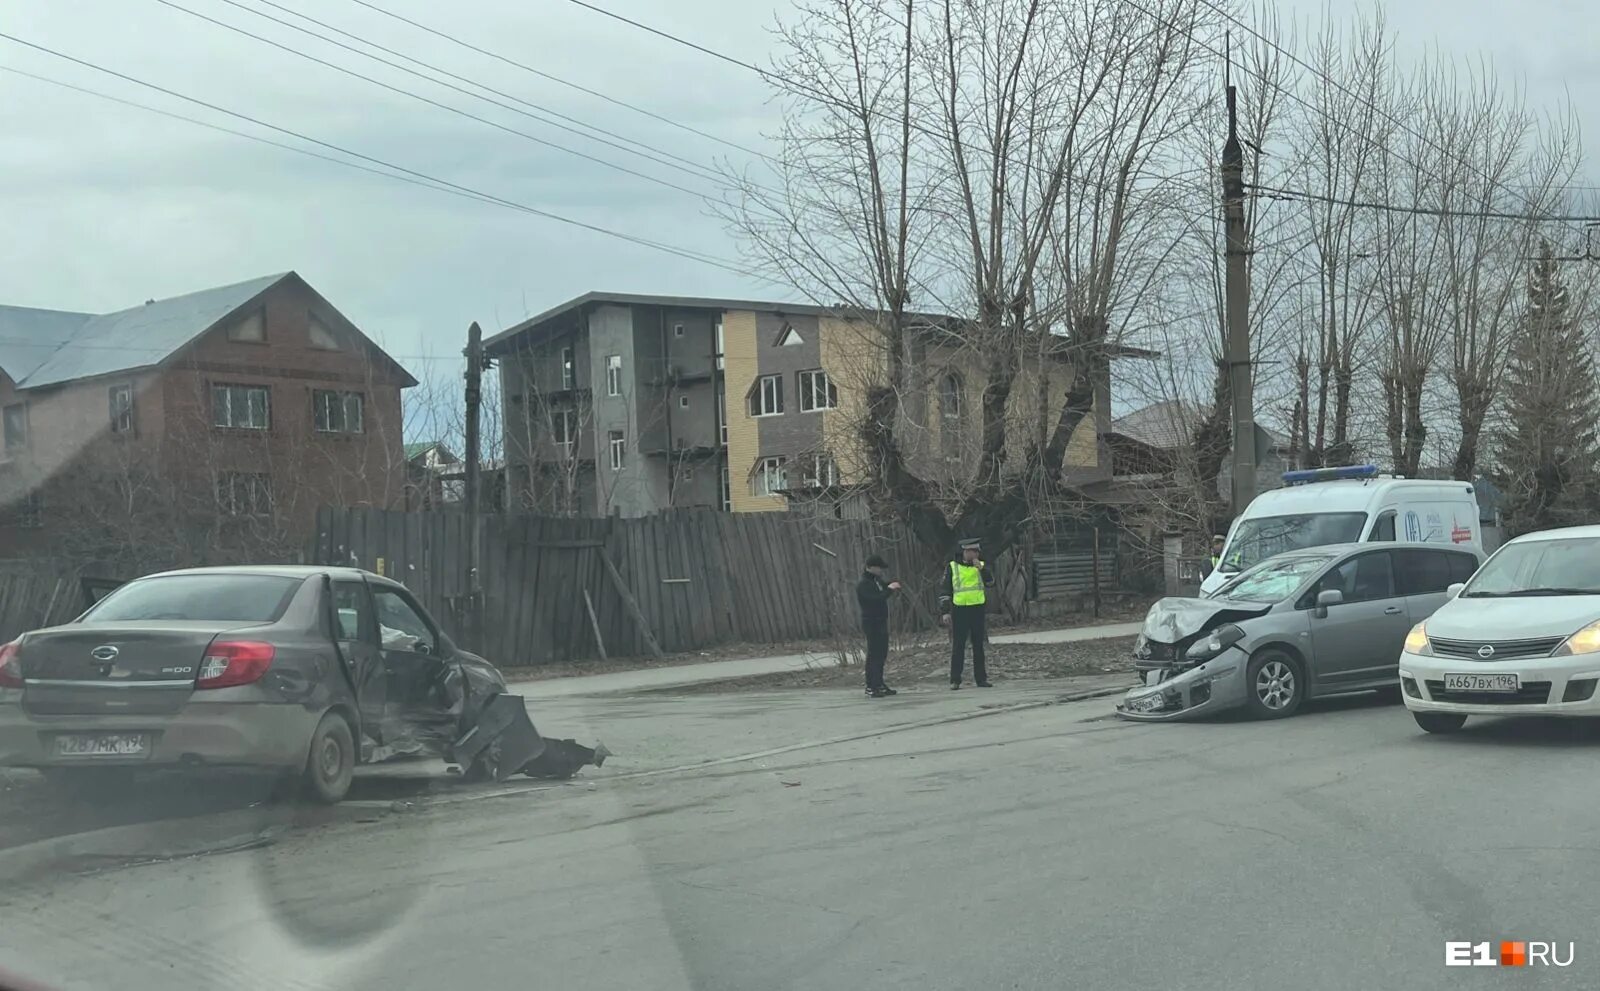 Е1 происшествия сегодня. Авария на Химмаше вчера Екатеринбург. Рыбинск ДТП 25 апреля 2022.